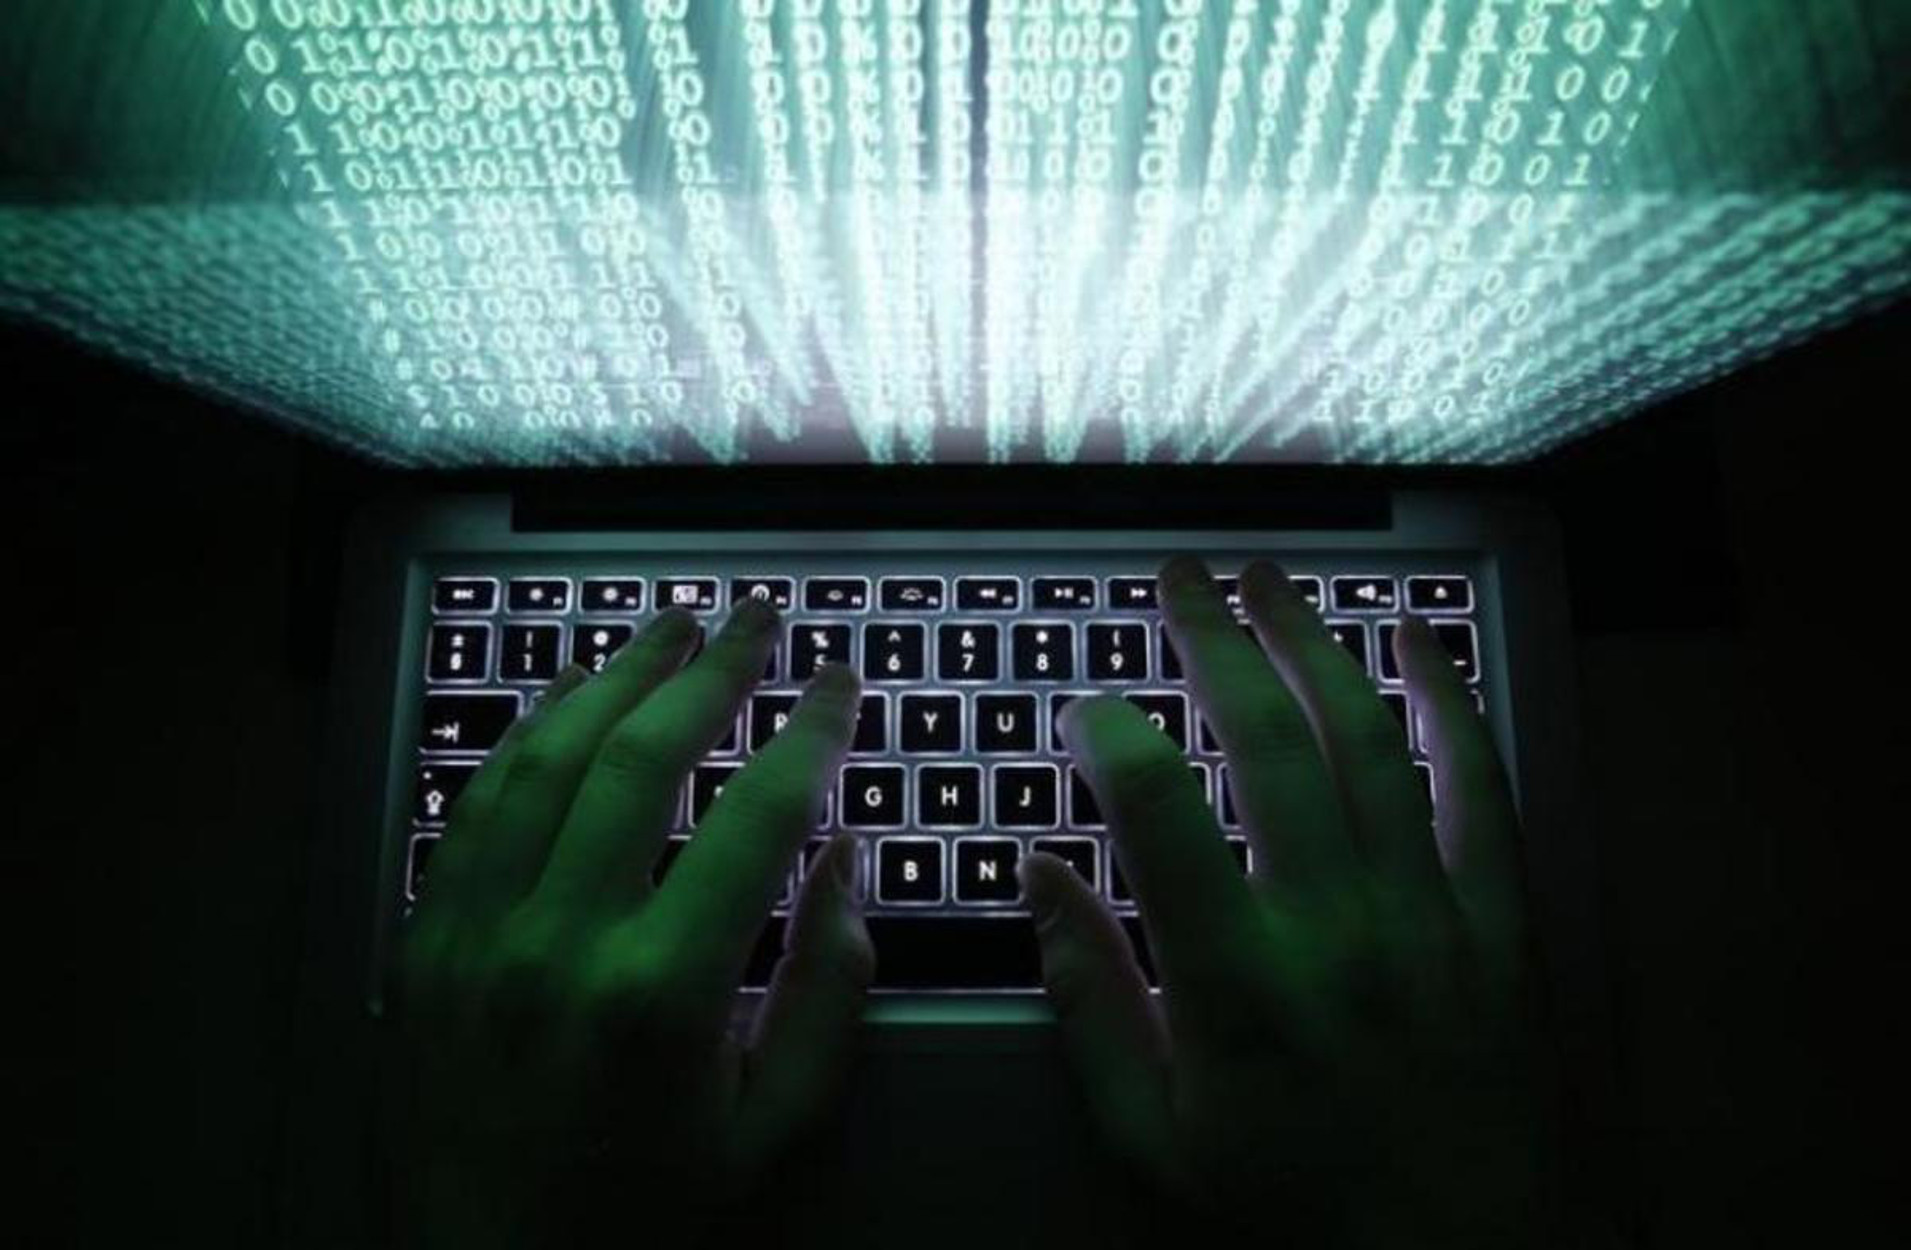 Οι πιο συνηθισμένες απειλές στο ίντερνετ και 12 απειλές για να τις αντιμετωπίσετε